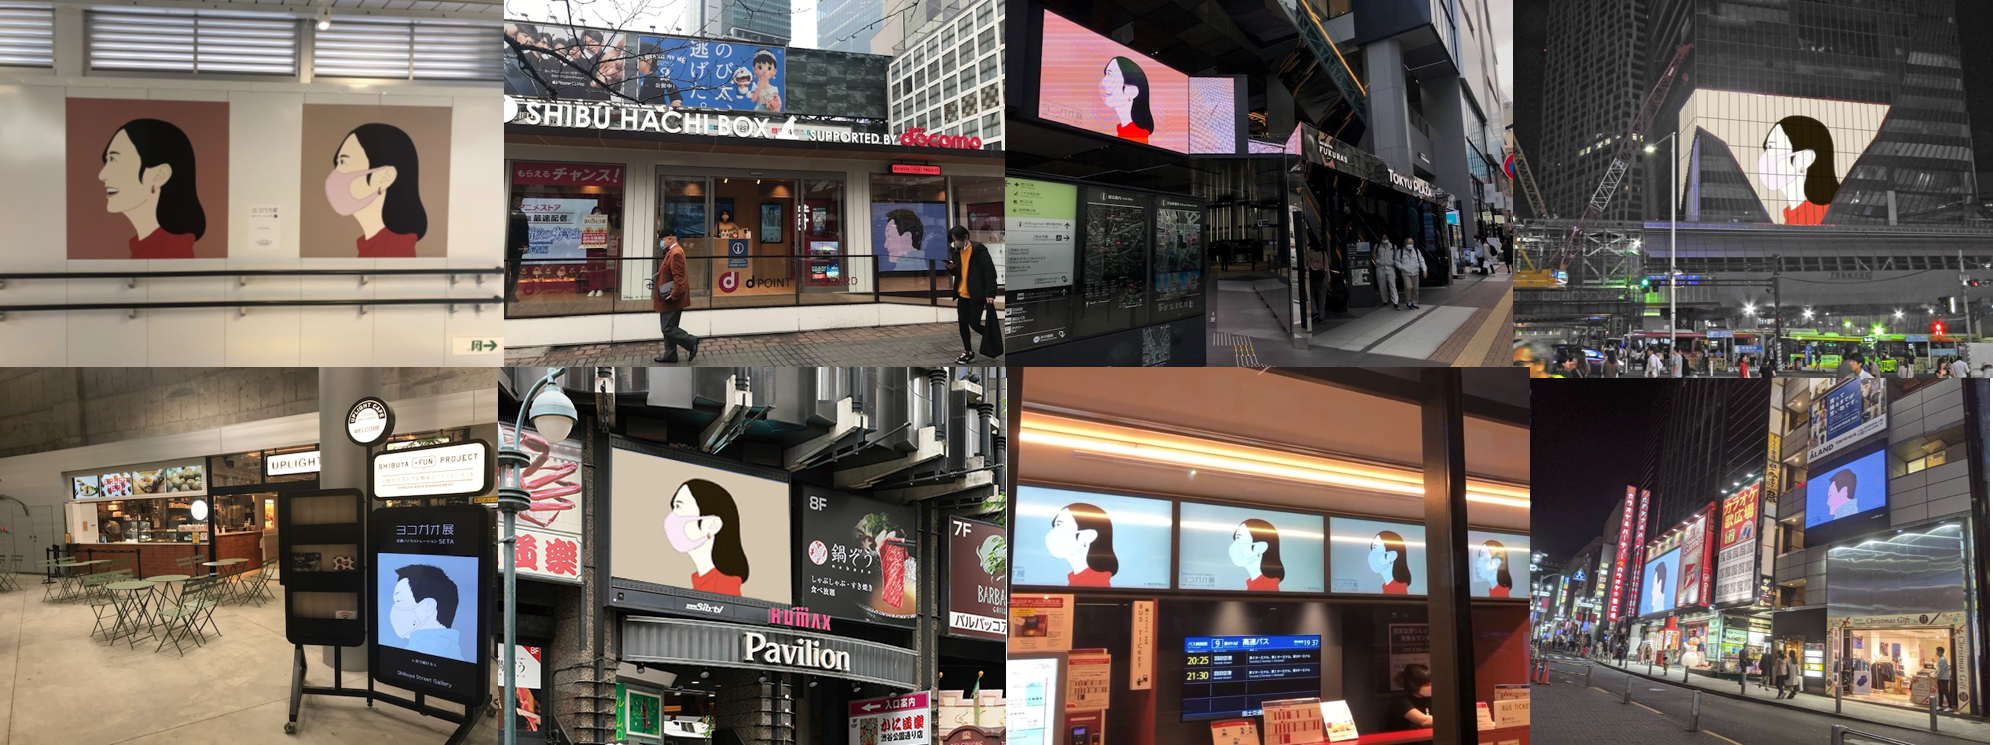 渋谷エリアが連携するまちなかアートプラットフォーム 渋谷ストリートギャラリー 始動 第1回 企画展seta セタ によるヨコガオ展を開催 Shibuya Sanのプレスリリース